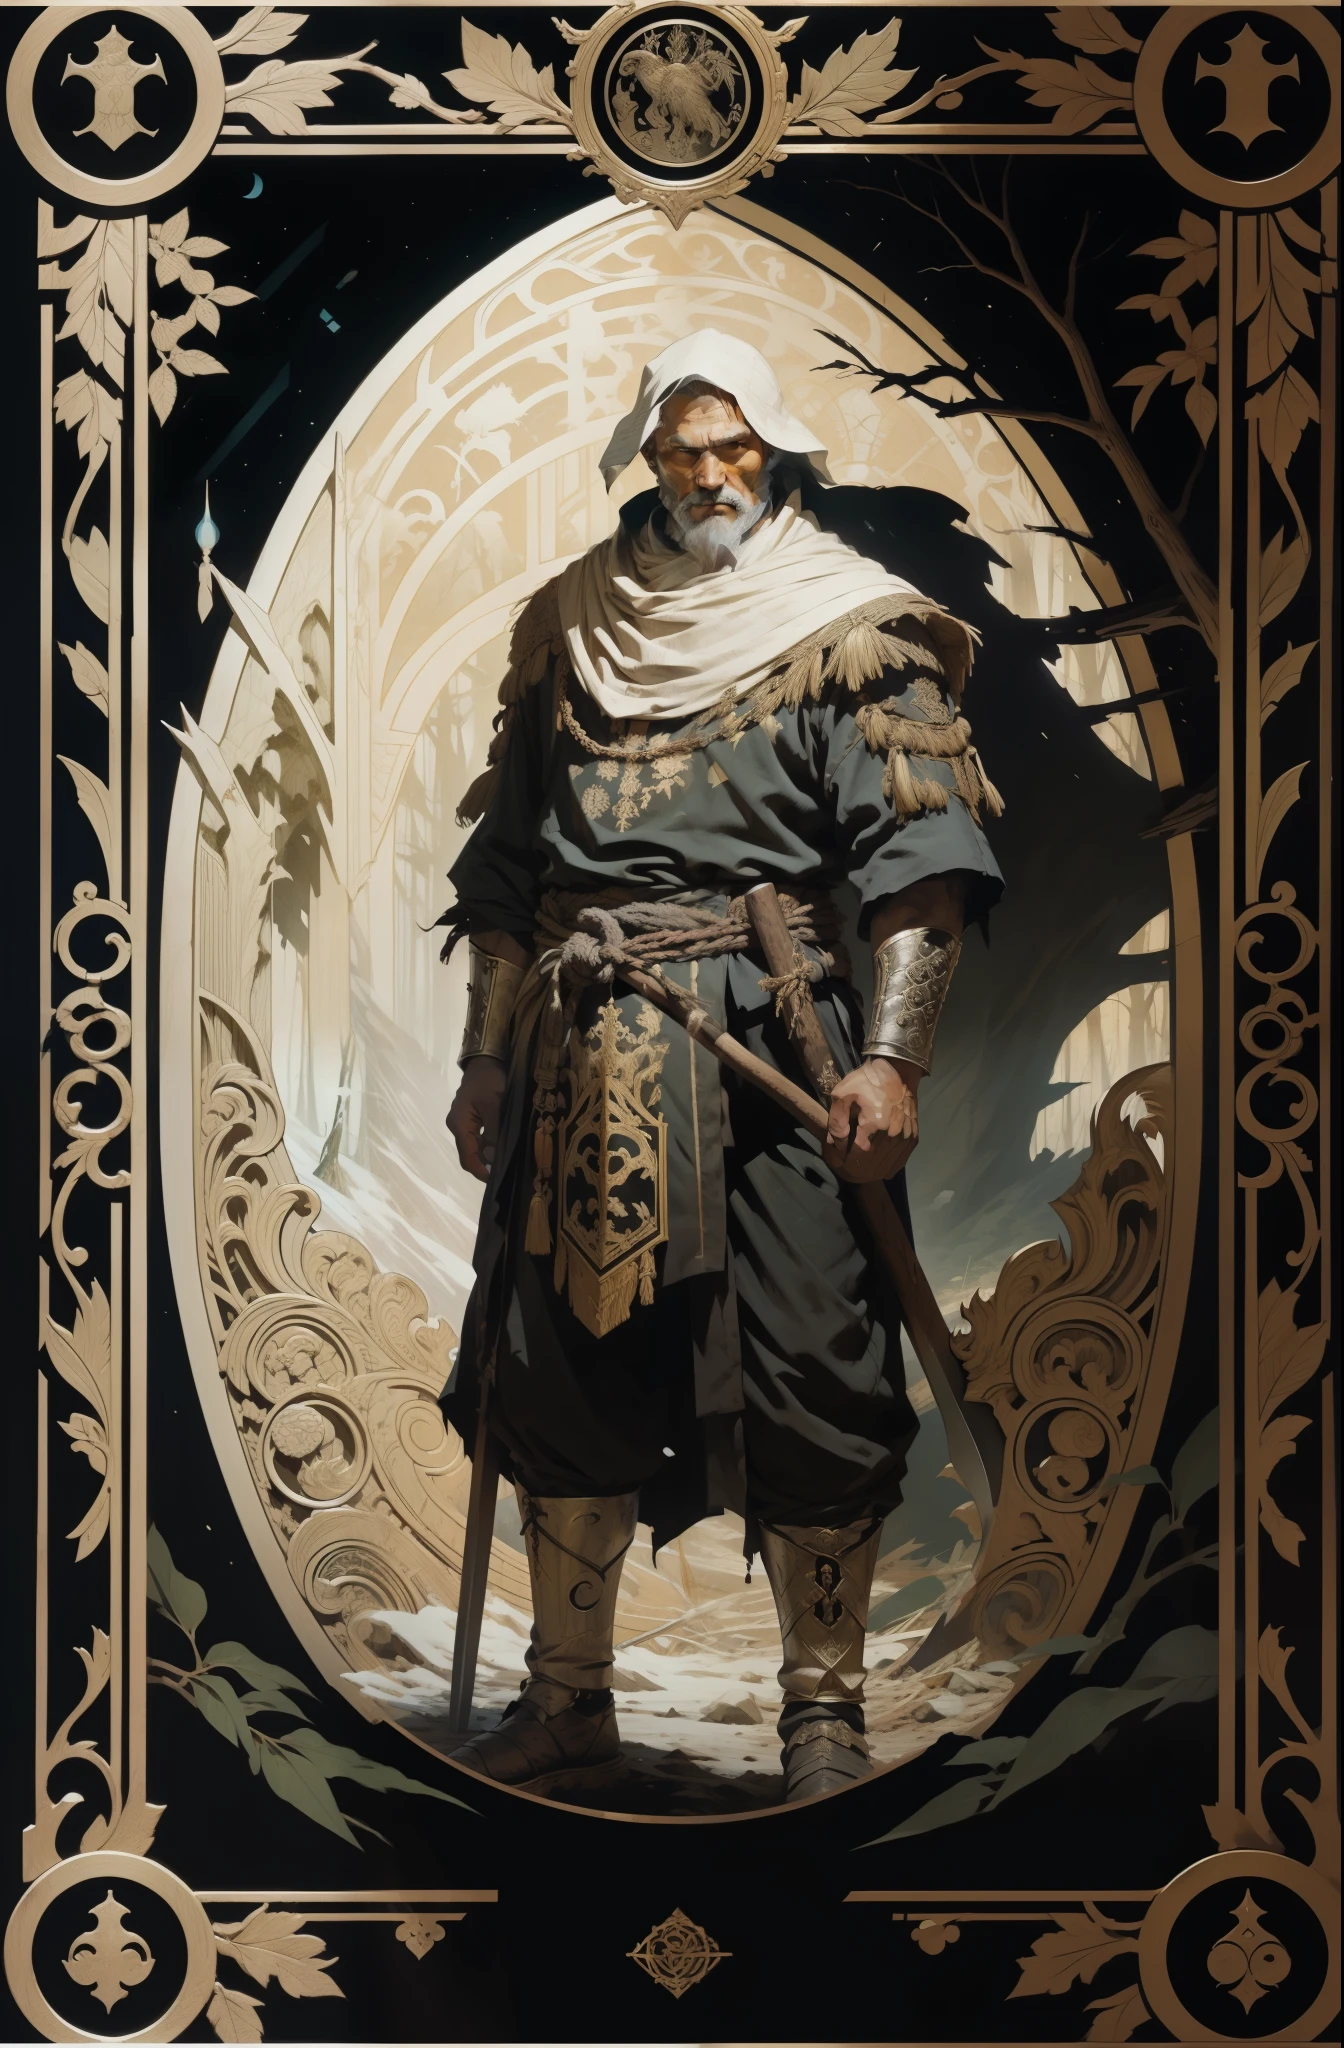 男, 北の民族の伝統衣装を着て, 斧を手に, 暗い森の背景, タロットスタイル, 中世の模様のフレーム